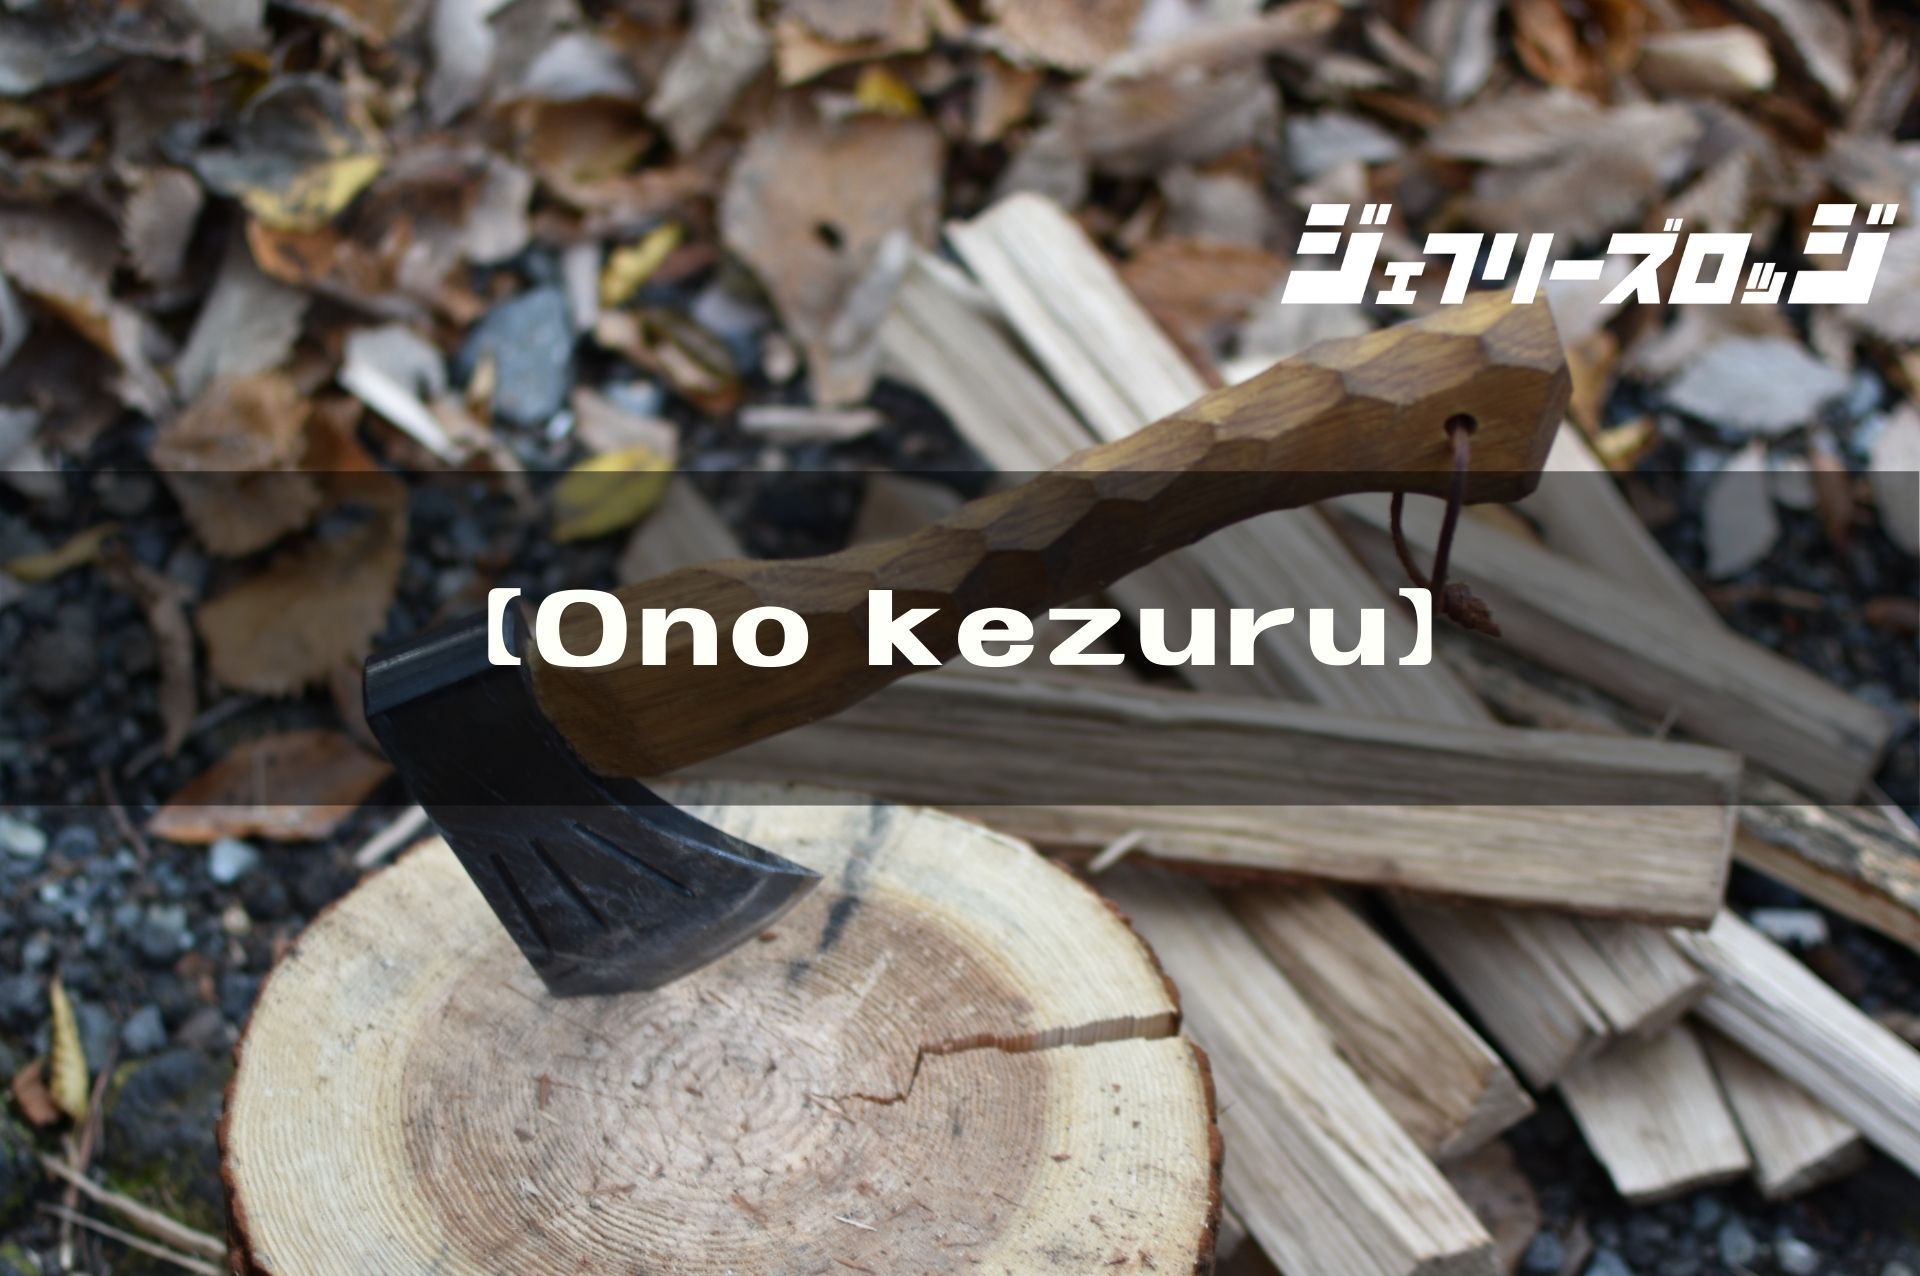 アウトドア 調理器具 Ono kezuru】 唯一無二な存在感が漂う手斧 by neru design works x 